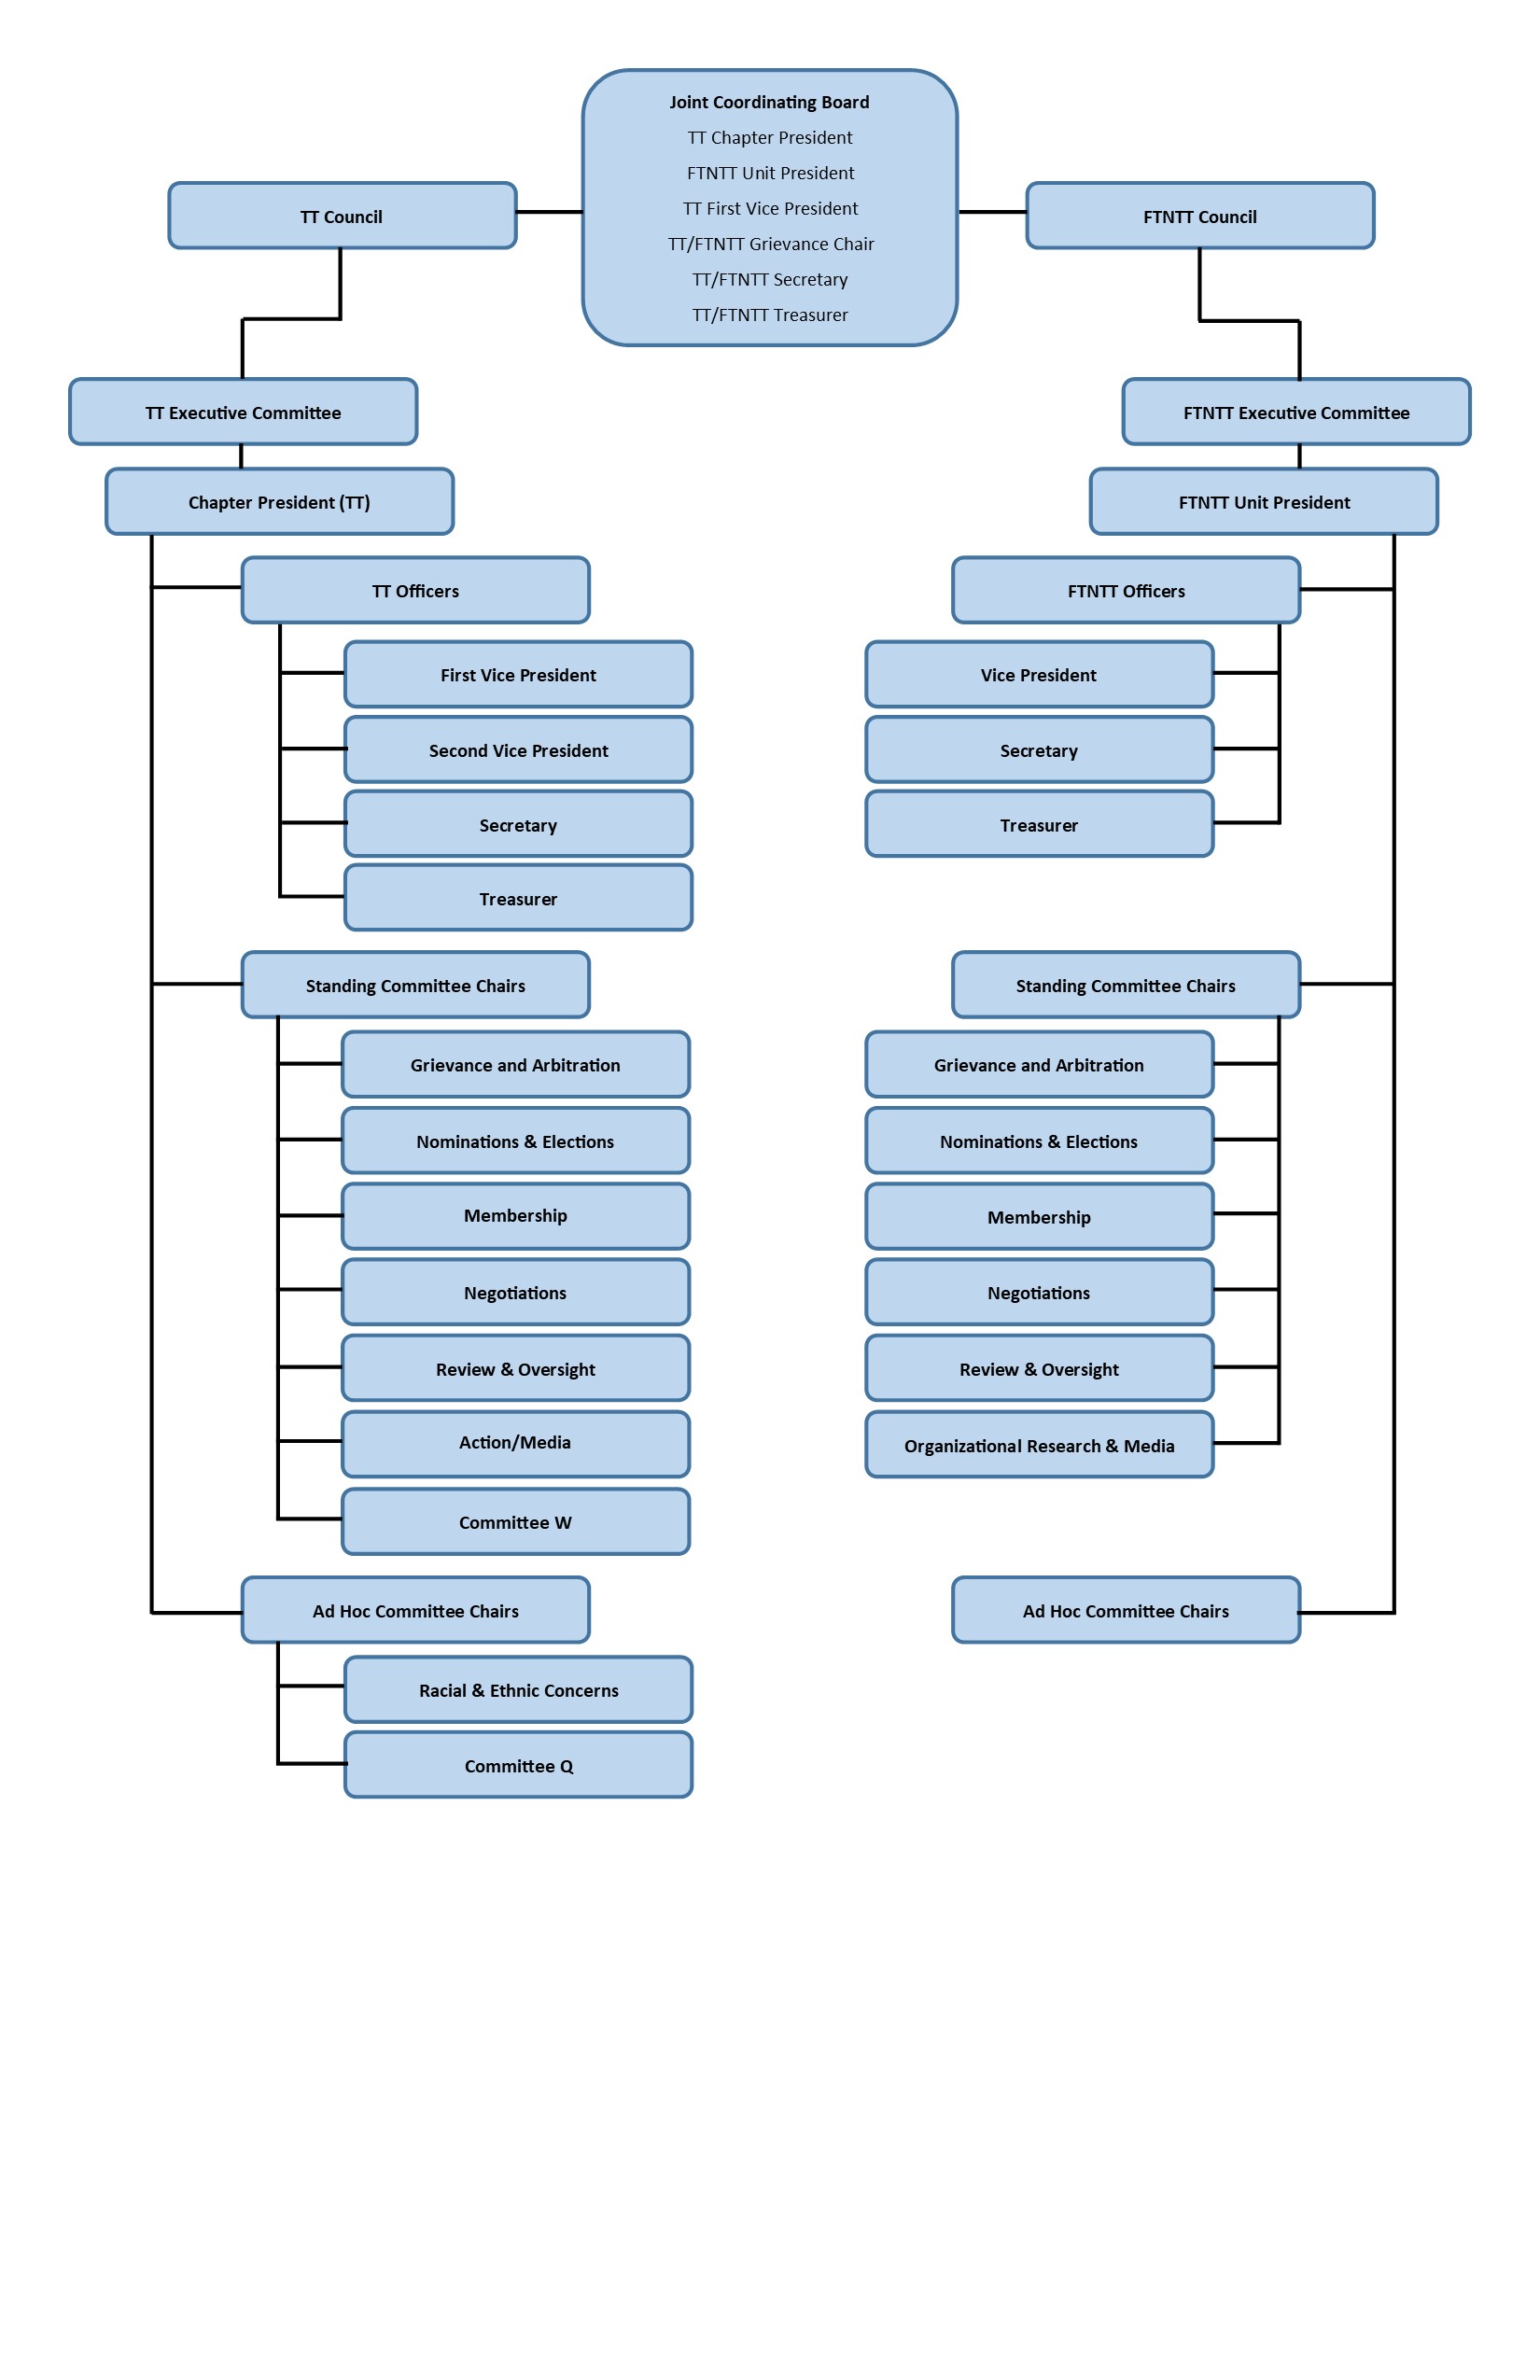 AAUP-KSU Organization Chart